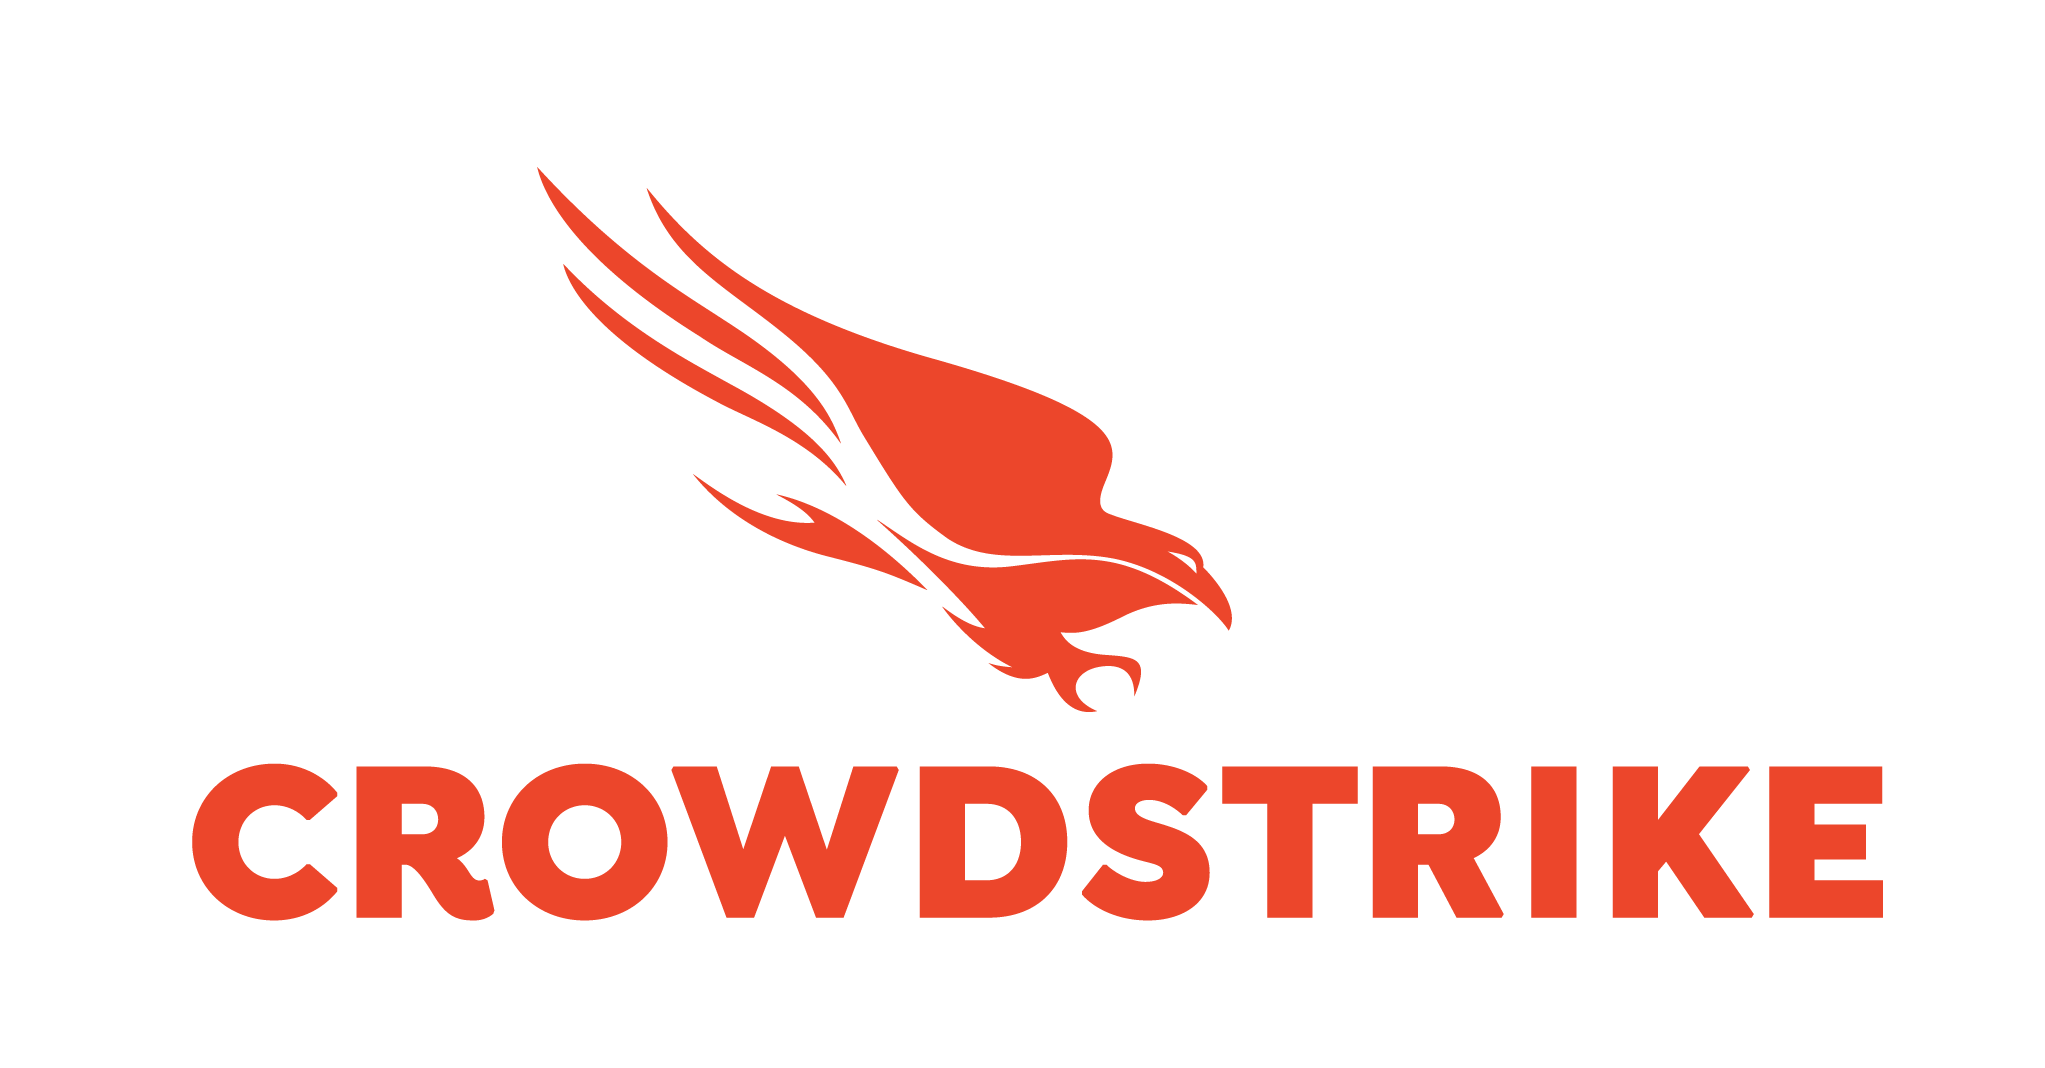 crowdstrike-logo.jpg